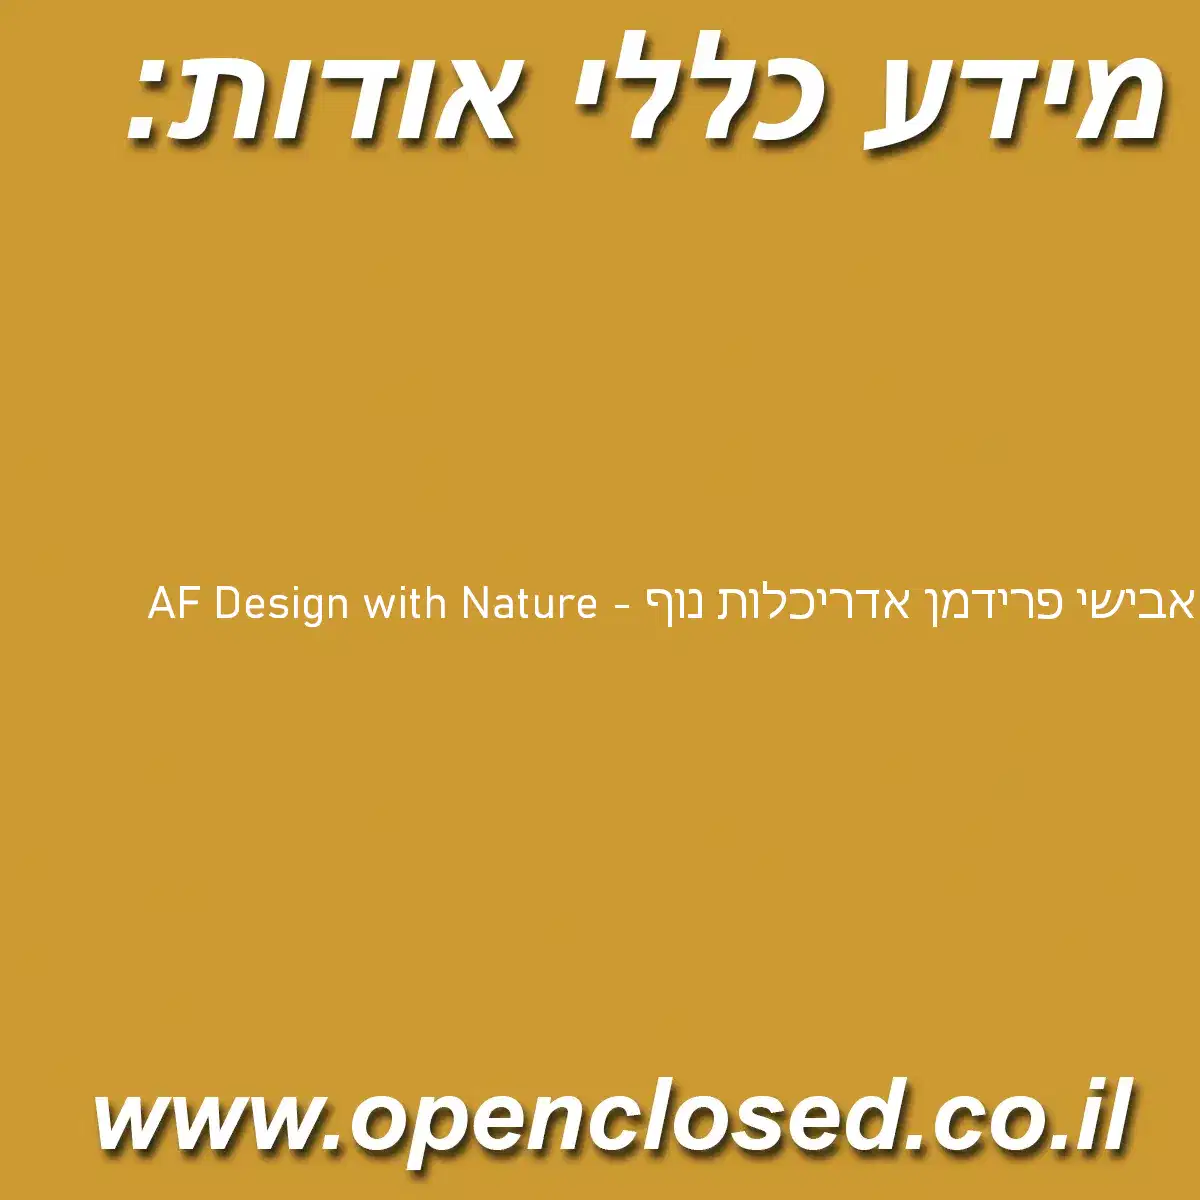 אבישי פרידמן אדריכלות נוף – AF Design with Nature